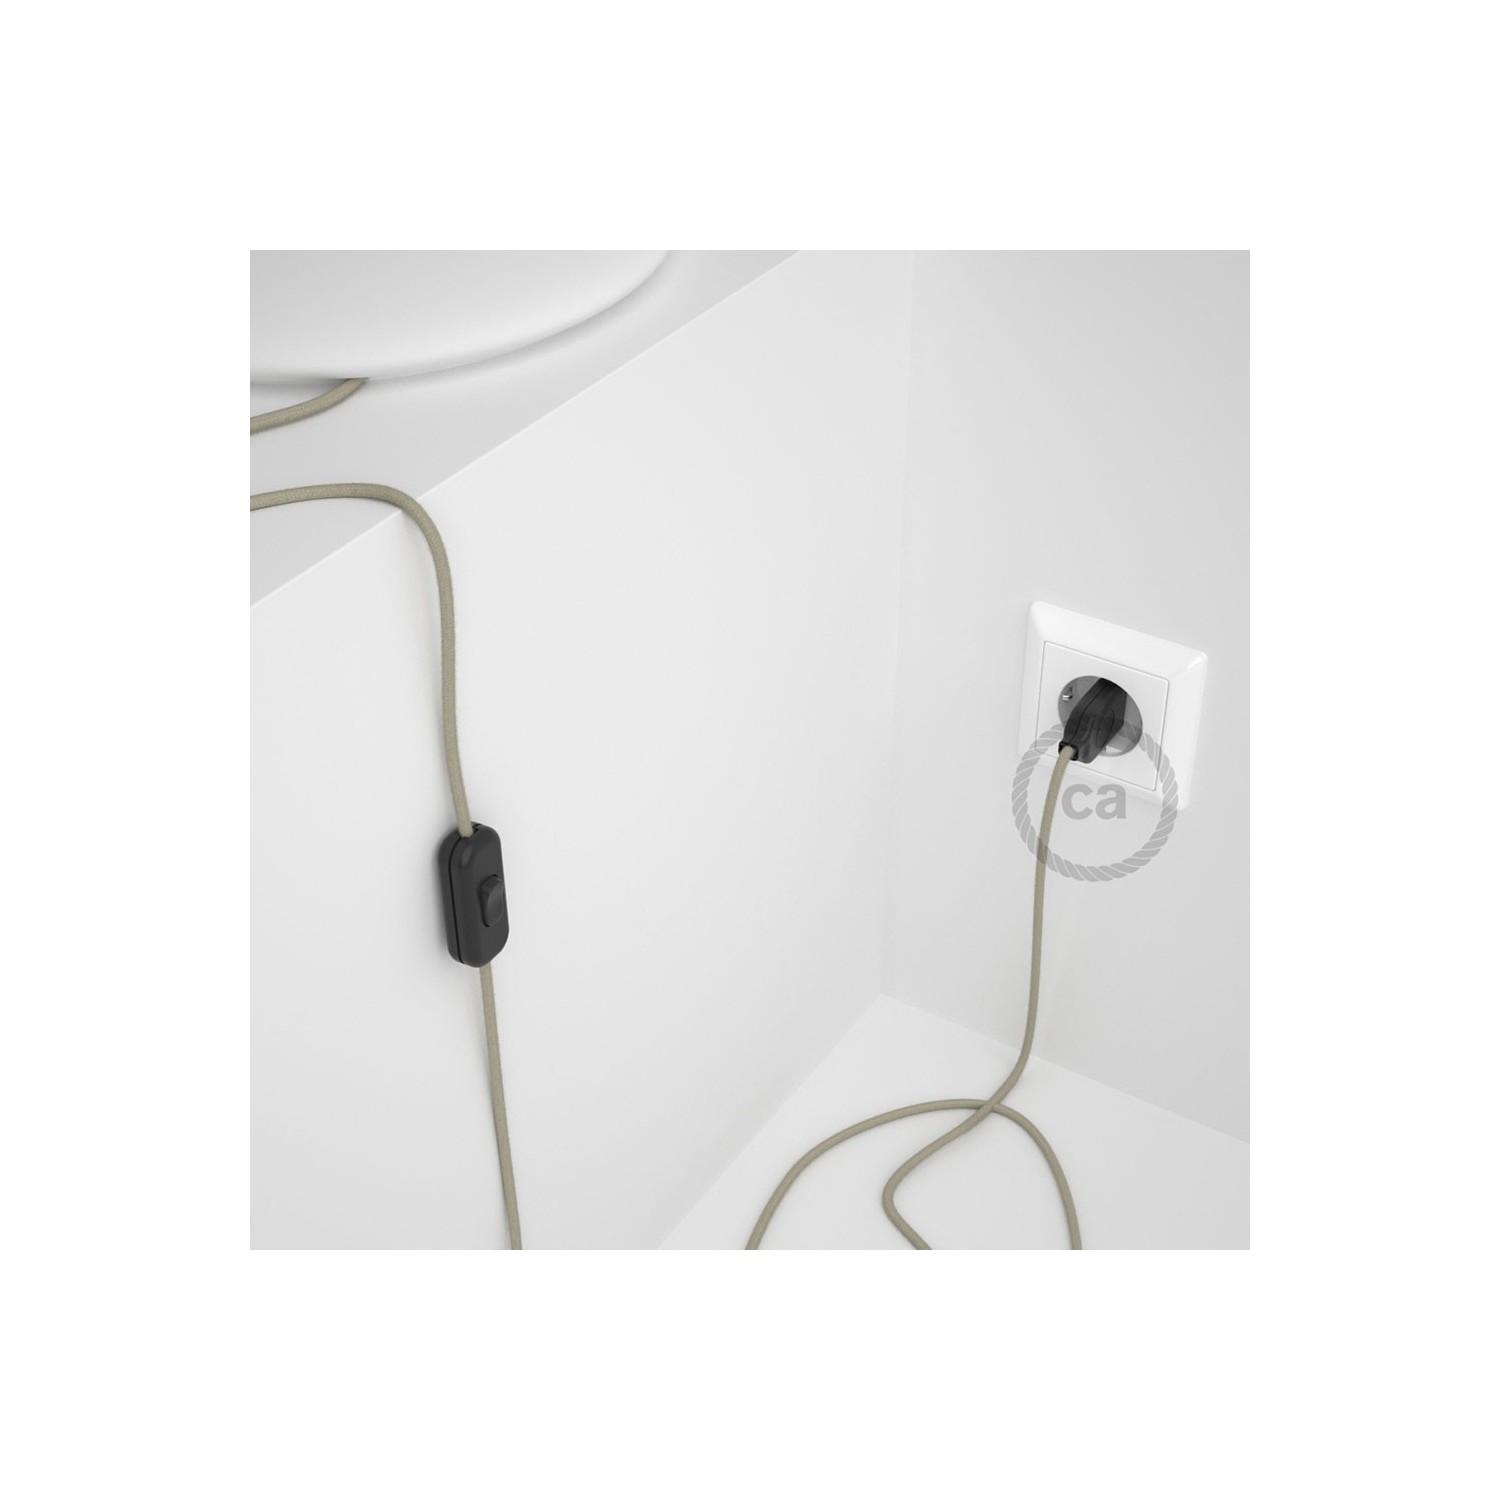 Cordon pour lampe, câble RC43 Coton Tourterelle 1,80 m. Choisissez la couleur de la fiche et de l'interrupteur!